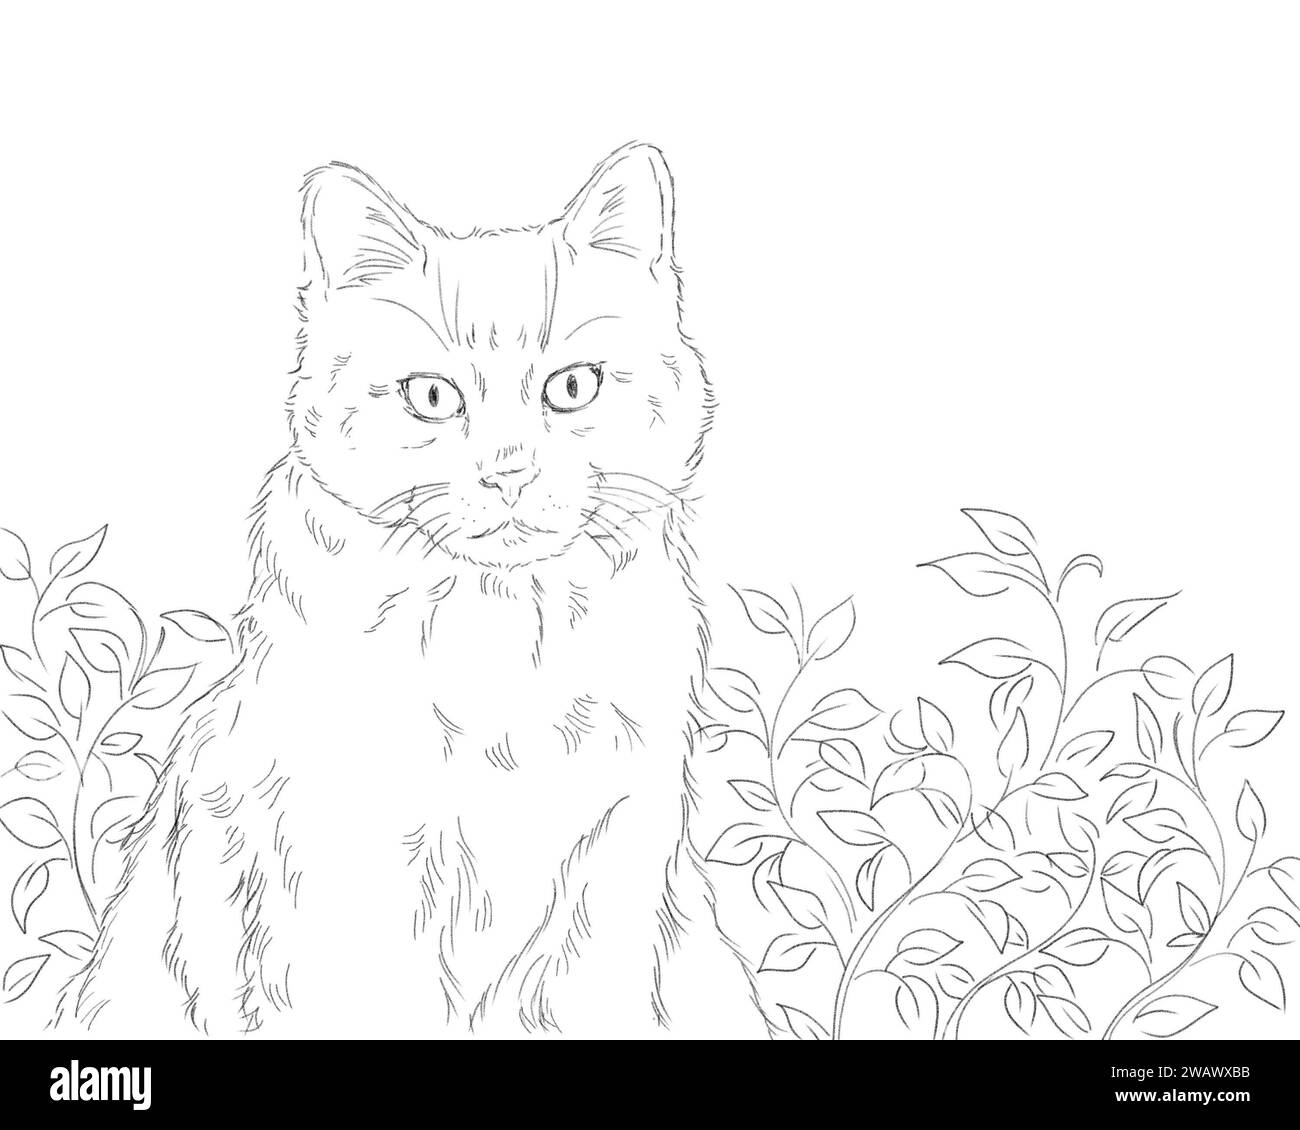 Portrait d'un chat adorable mignon assis dans le fond de la nature extérieure. Dessin artistique au crayon noir et blanc. Concept d'animal de compagnie. Banque D'Images